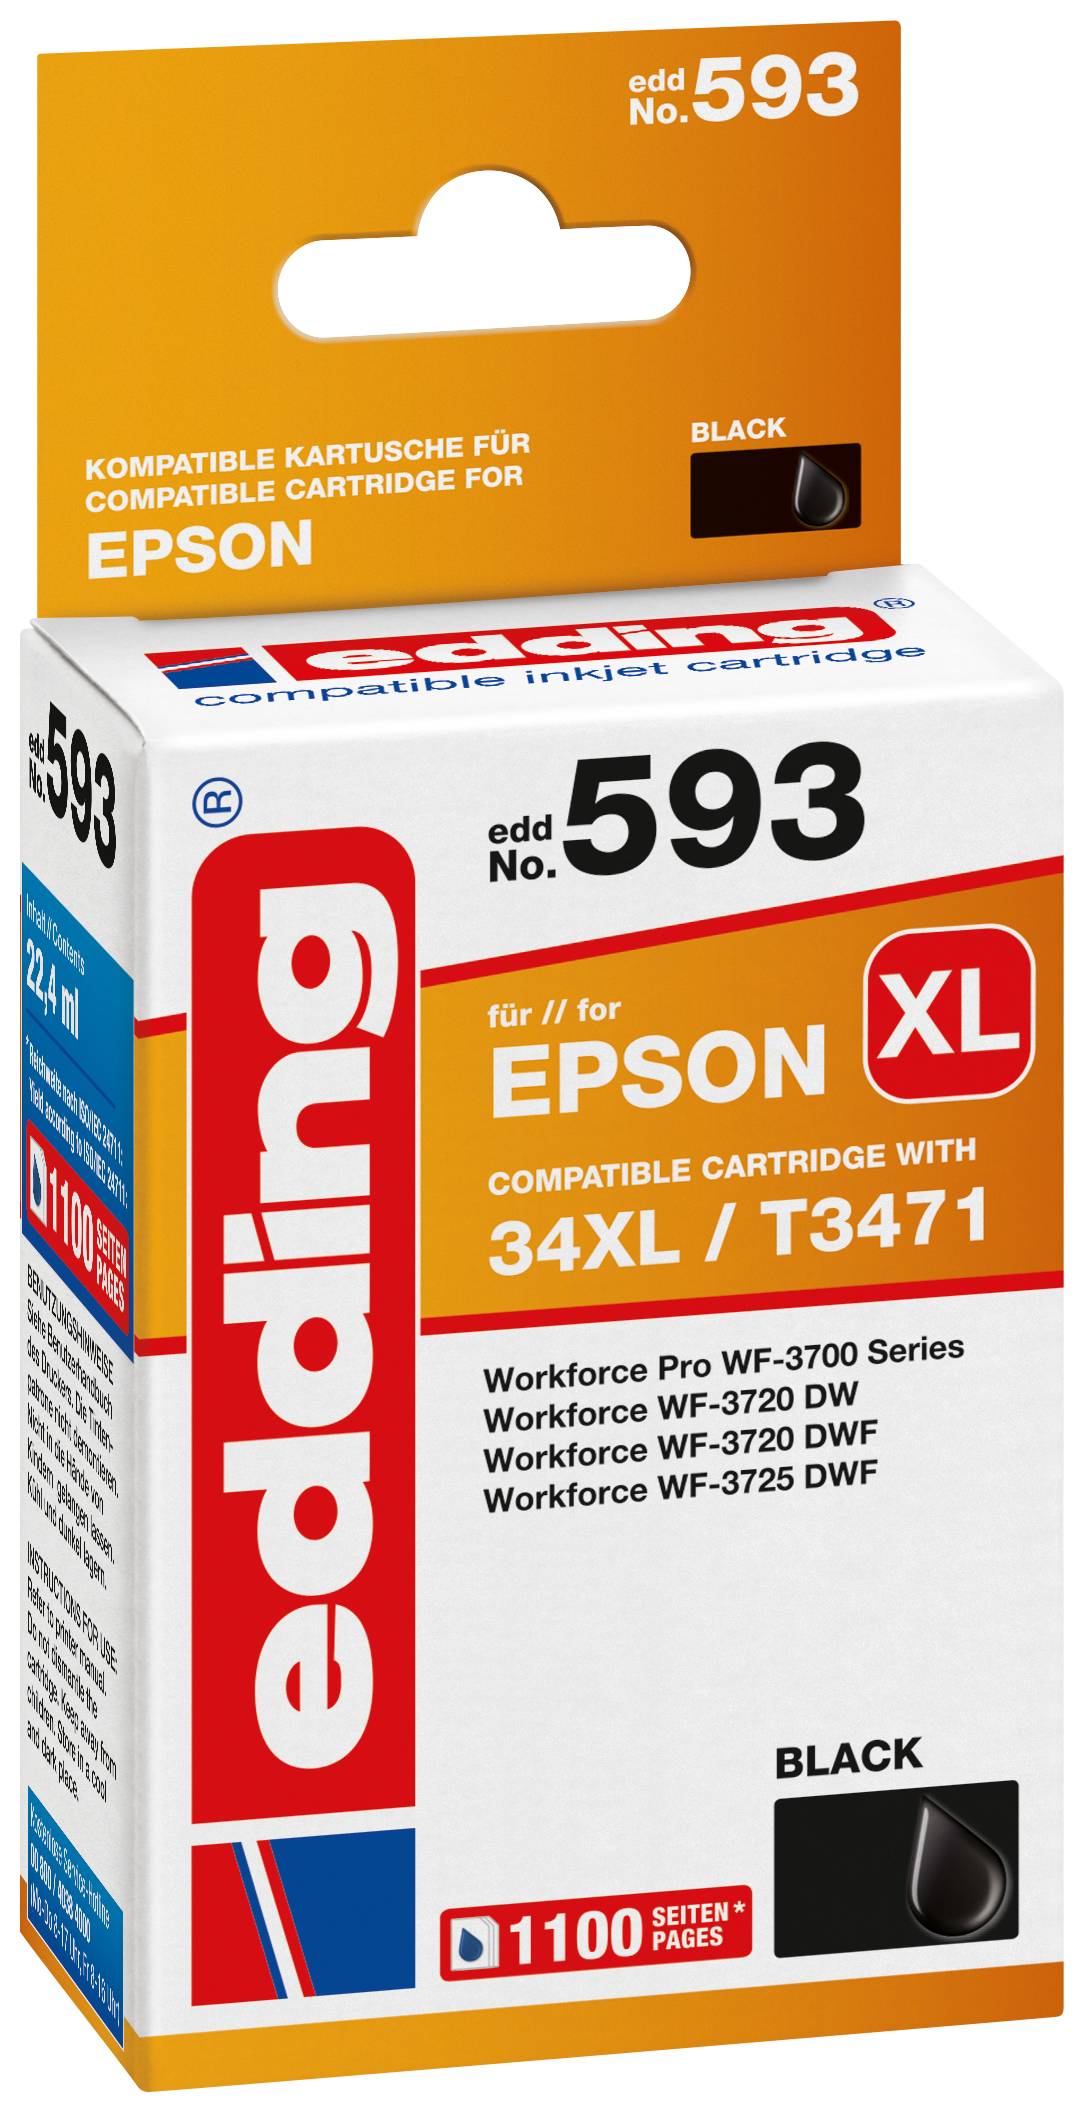 EDDING Tintenpatrone ersetzt Epson 34XL / T3471 Kompatibel einzeln Schwarz EDD-593 18-593